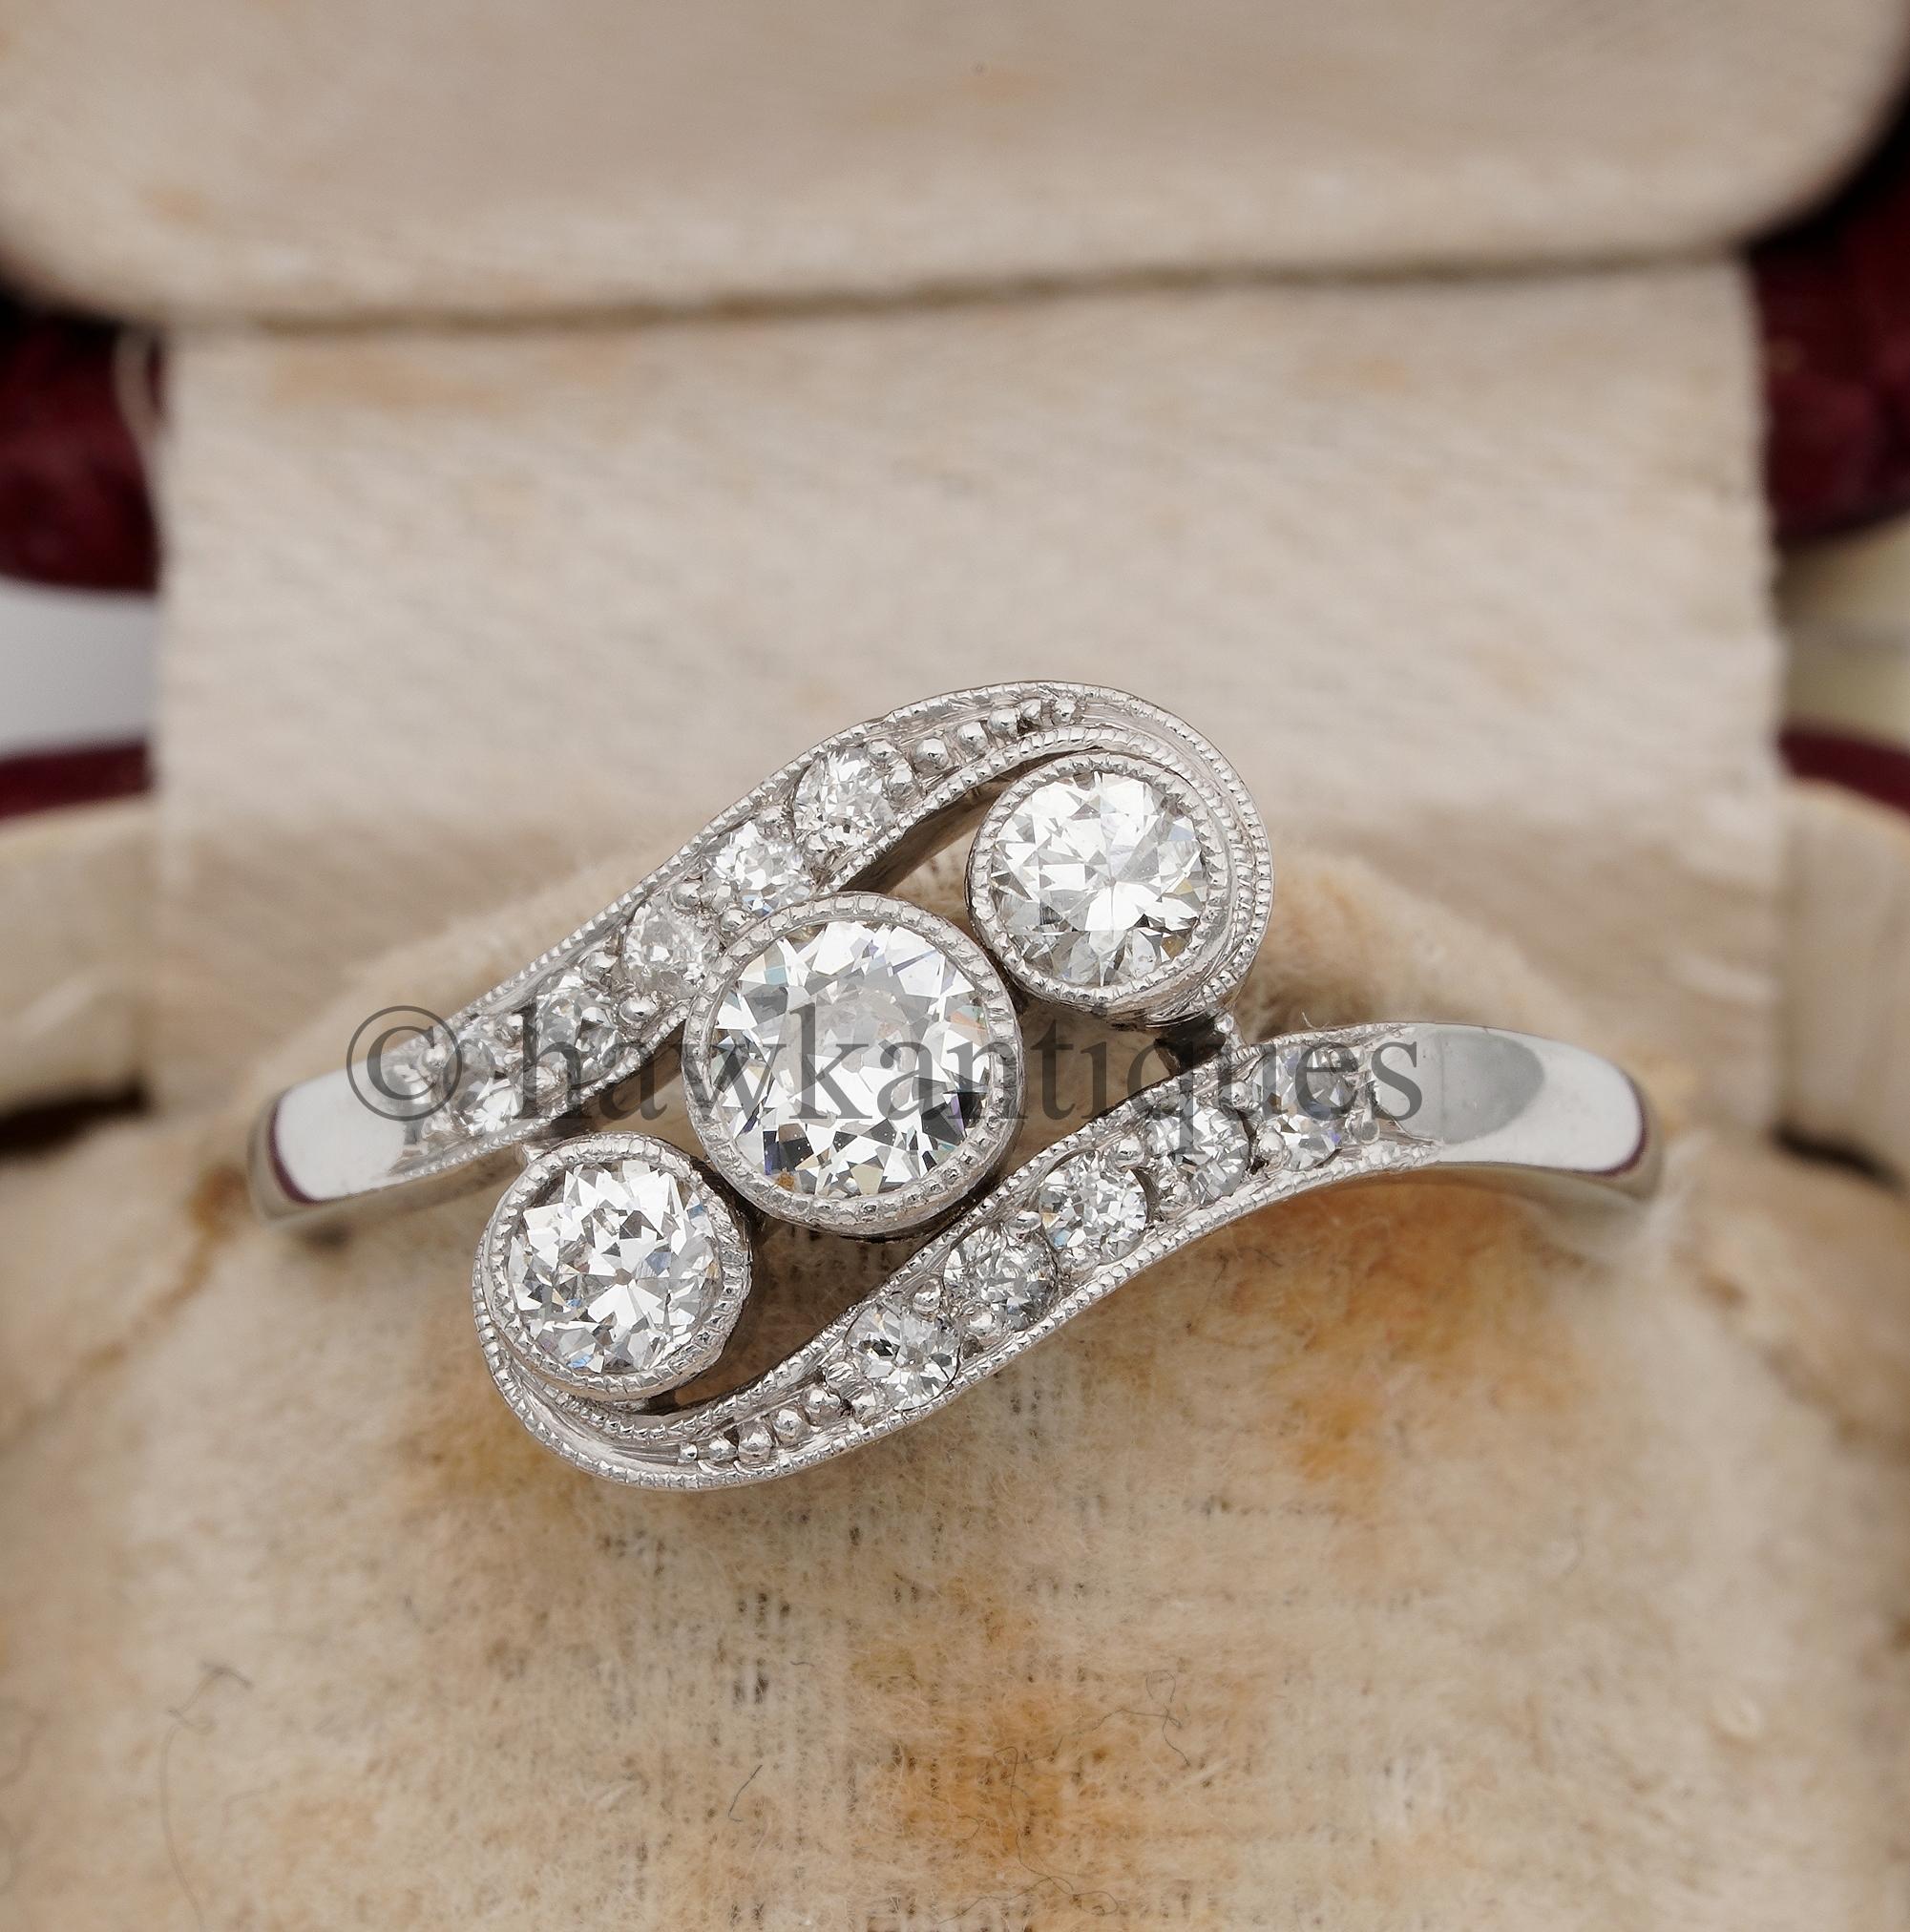 L'amour est en l'air
Magnifique bague Art déco à trois pierres et diamants, très bien fabriquée à la main, belle version torsadée ou croisée, comme c'était le cas à l'époque du Nouveau et du Déco.
Design/One de l'époque, or massif 18 carats surmonté